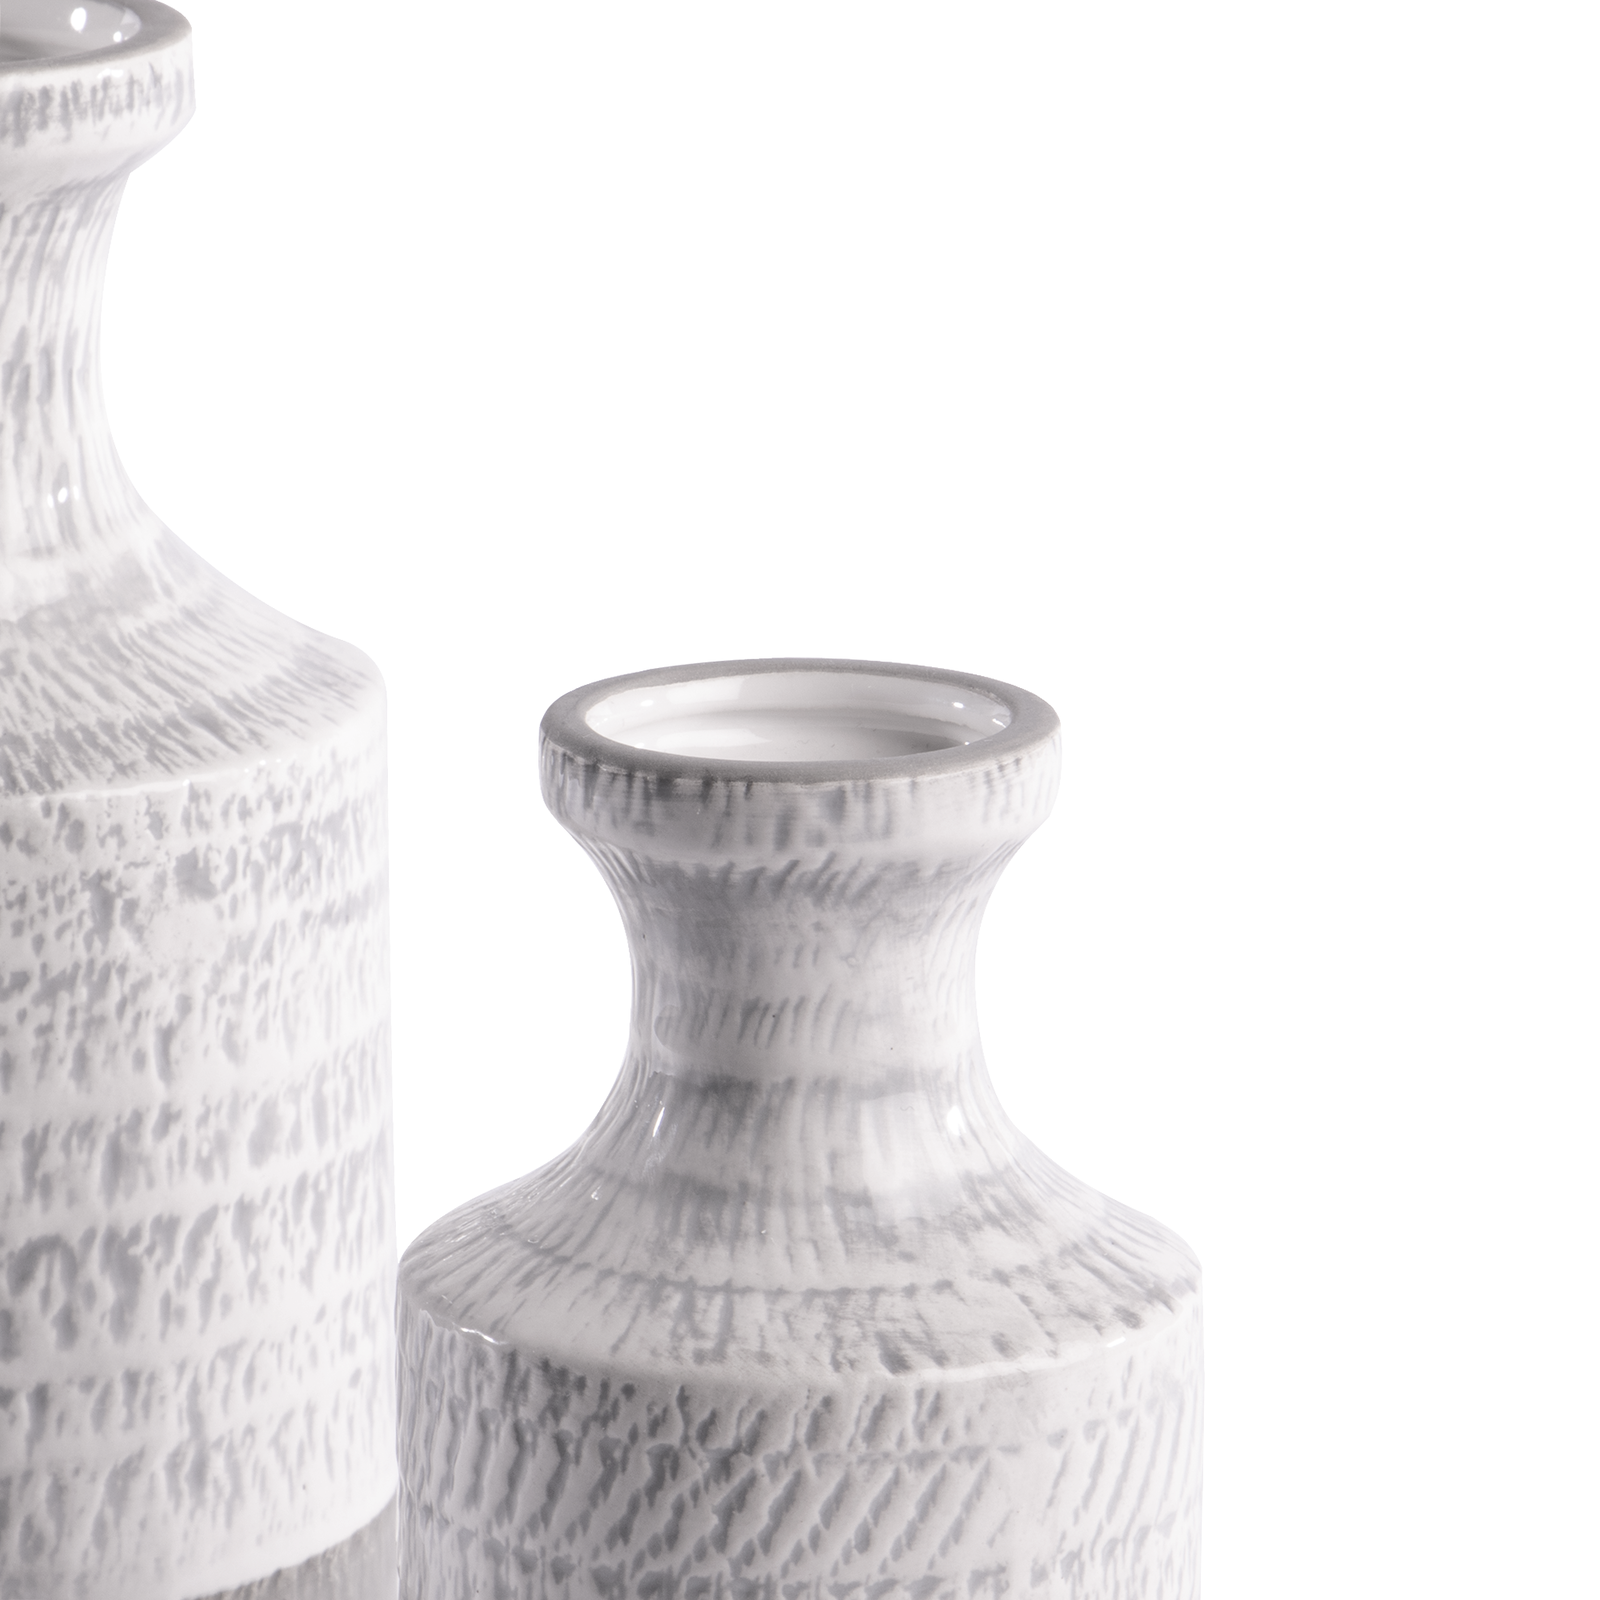 Ceramic Vases - Grey and White Elegant Vase Set of 2